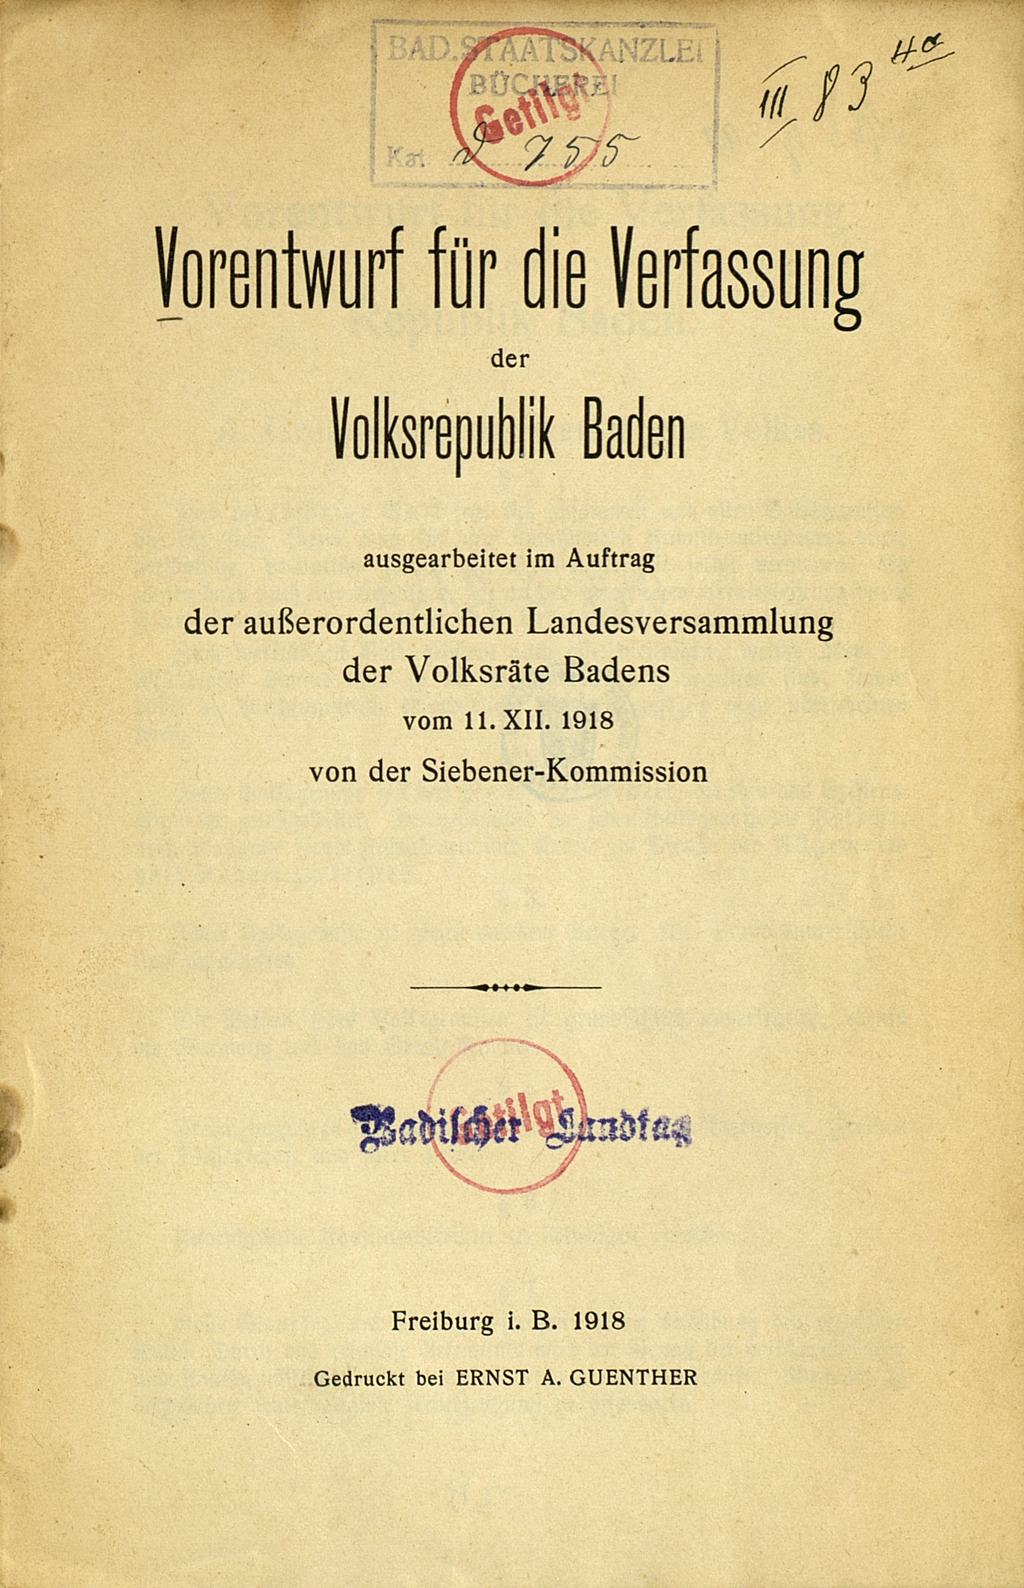 Zu sehen ist das Titelblatt des Vorentwurfs für die Verfassung der Volksrepublik Baden. Das Exemplar trägt den Stempel des Badischen Landtags mit dessen Aussonderungsvermerk.